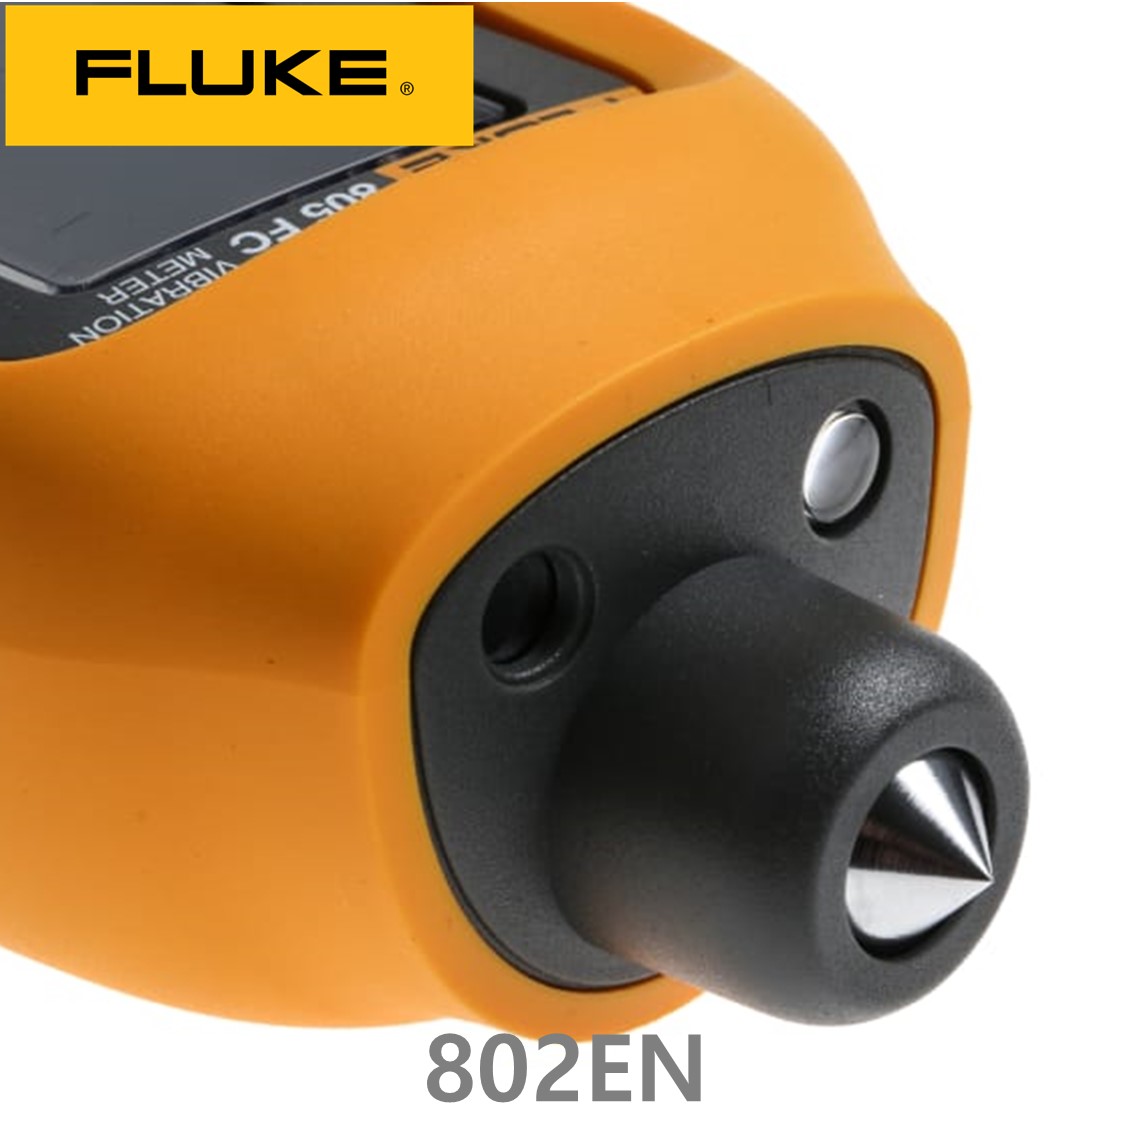 [ FLUKE 802EN ] 정품 플루크 보급형 진동계 802